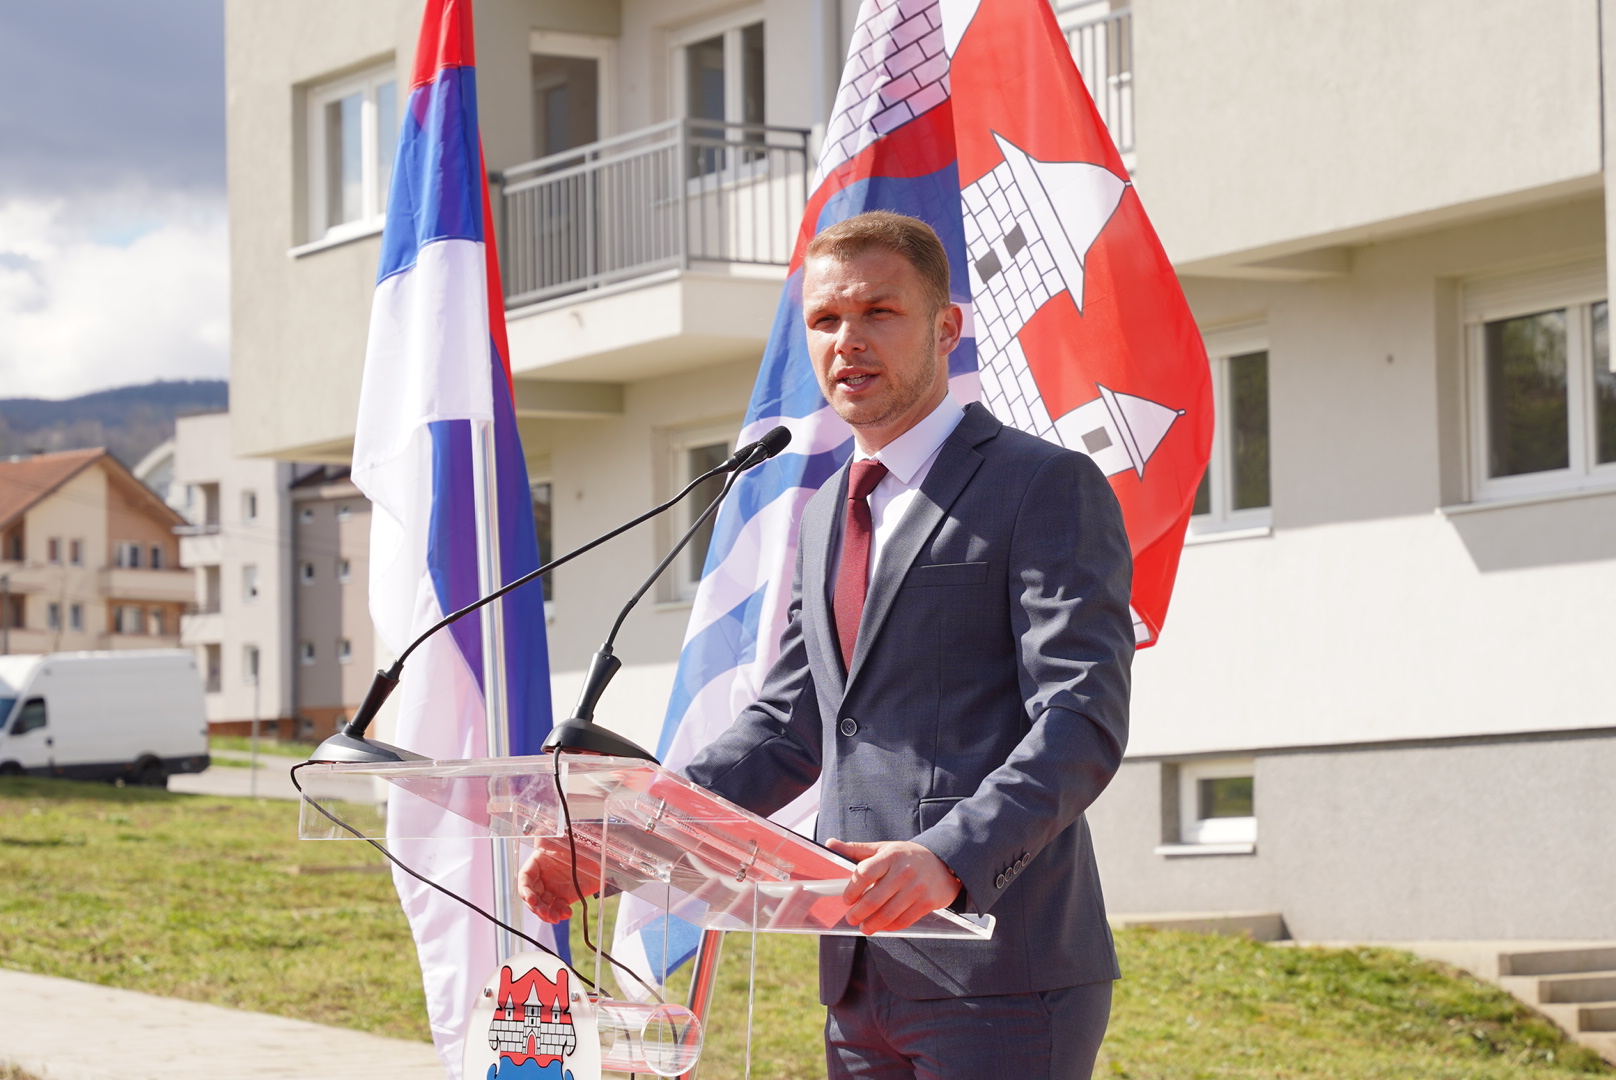 “DIPLOMATIJA MORA POSTOJATI” Stanivuković se ne slaže sa Dodikom oko odnosa s američkom ambasadom (VIDEO)